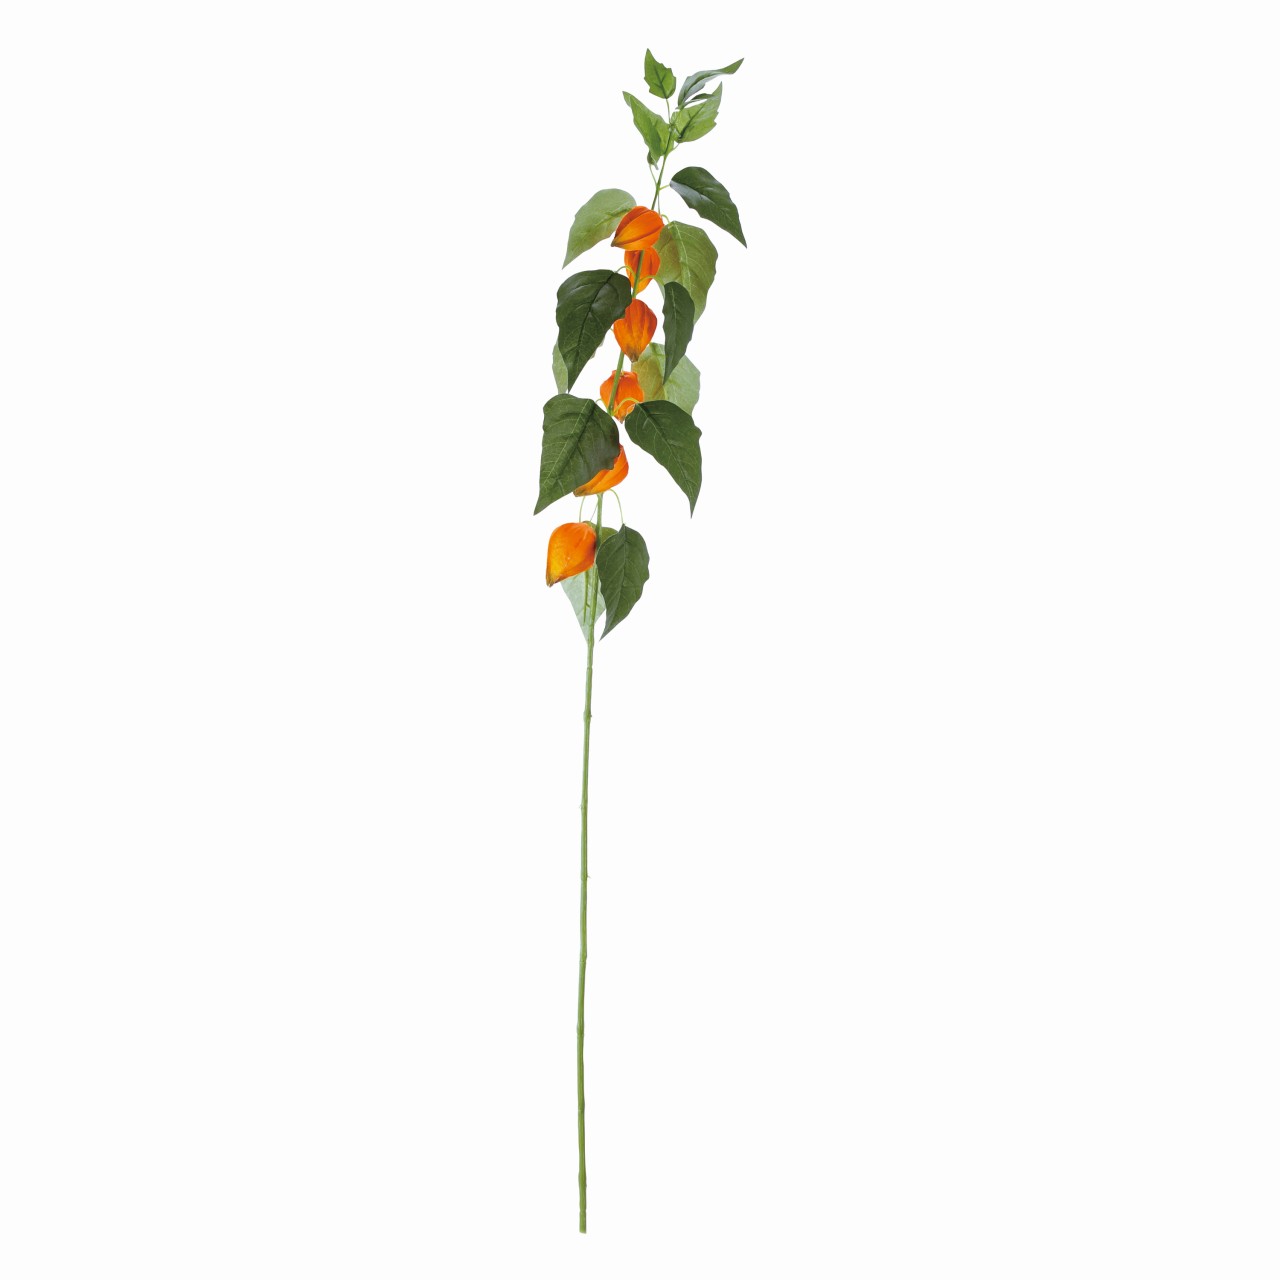 マイフラ 通販 Magiq 涼風ほおずき オレンジ アーティフィシャルフラワー 造花 Fm0011 鬼灯 実の直径 約4 5 6 長さ 約91cm オレンジ Magiq アーティフィシャルフラワー 造花 全国にmagiq 花器 花資材などをお届けします